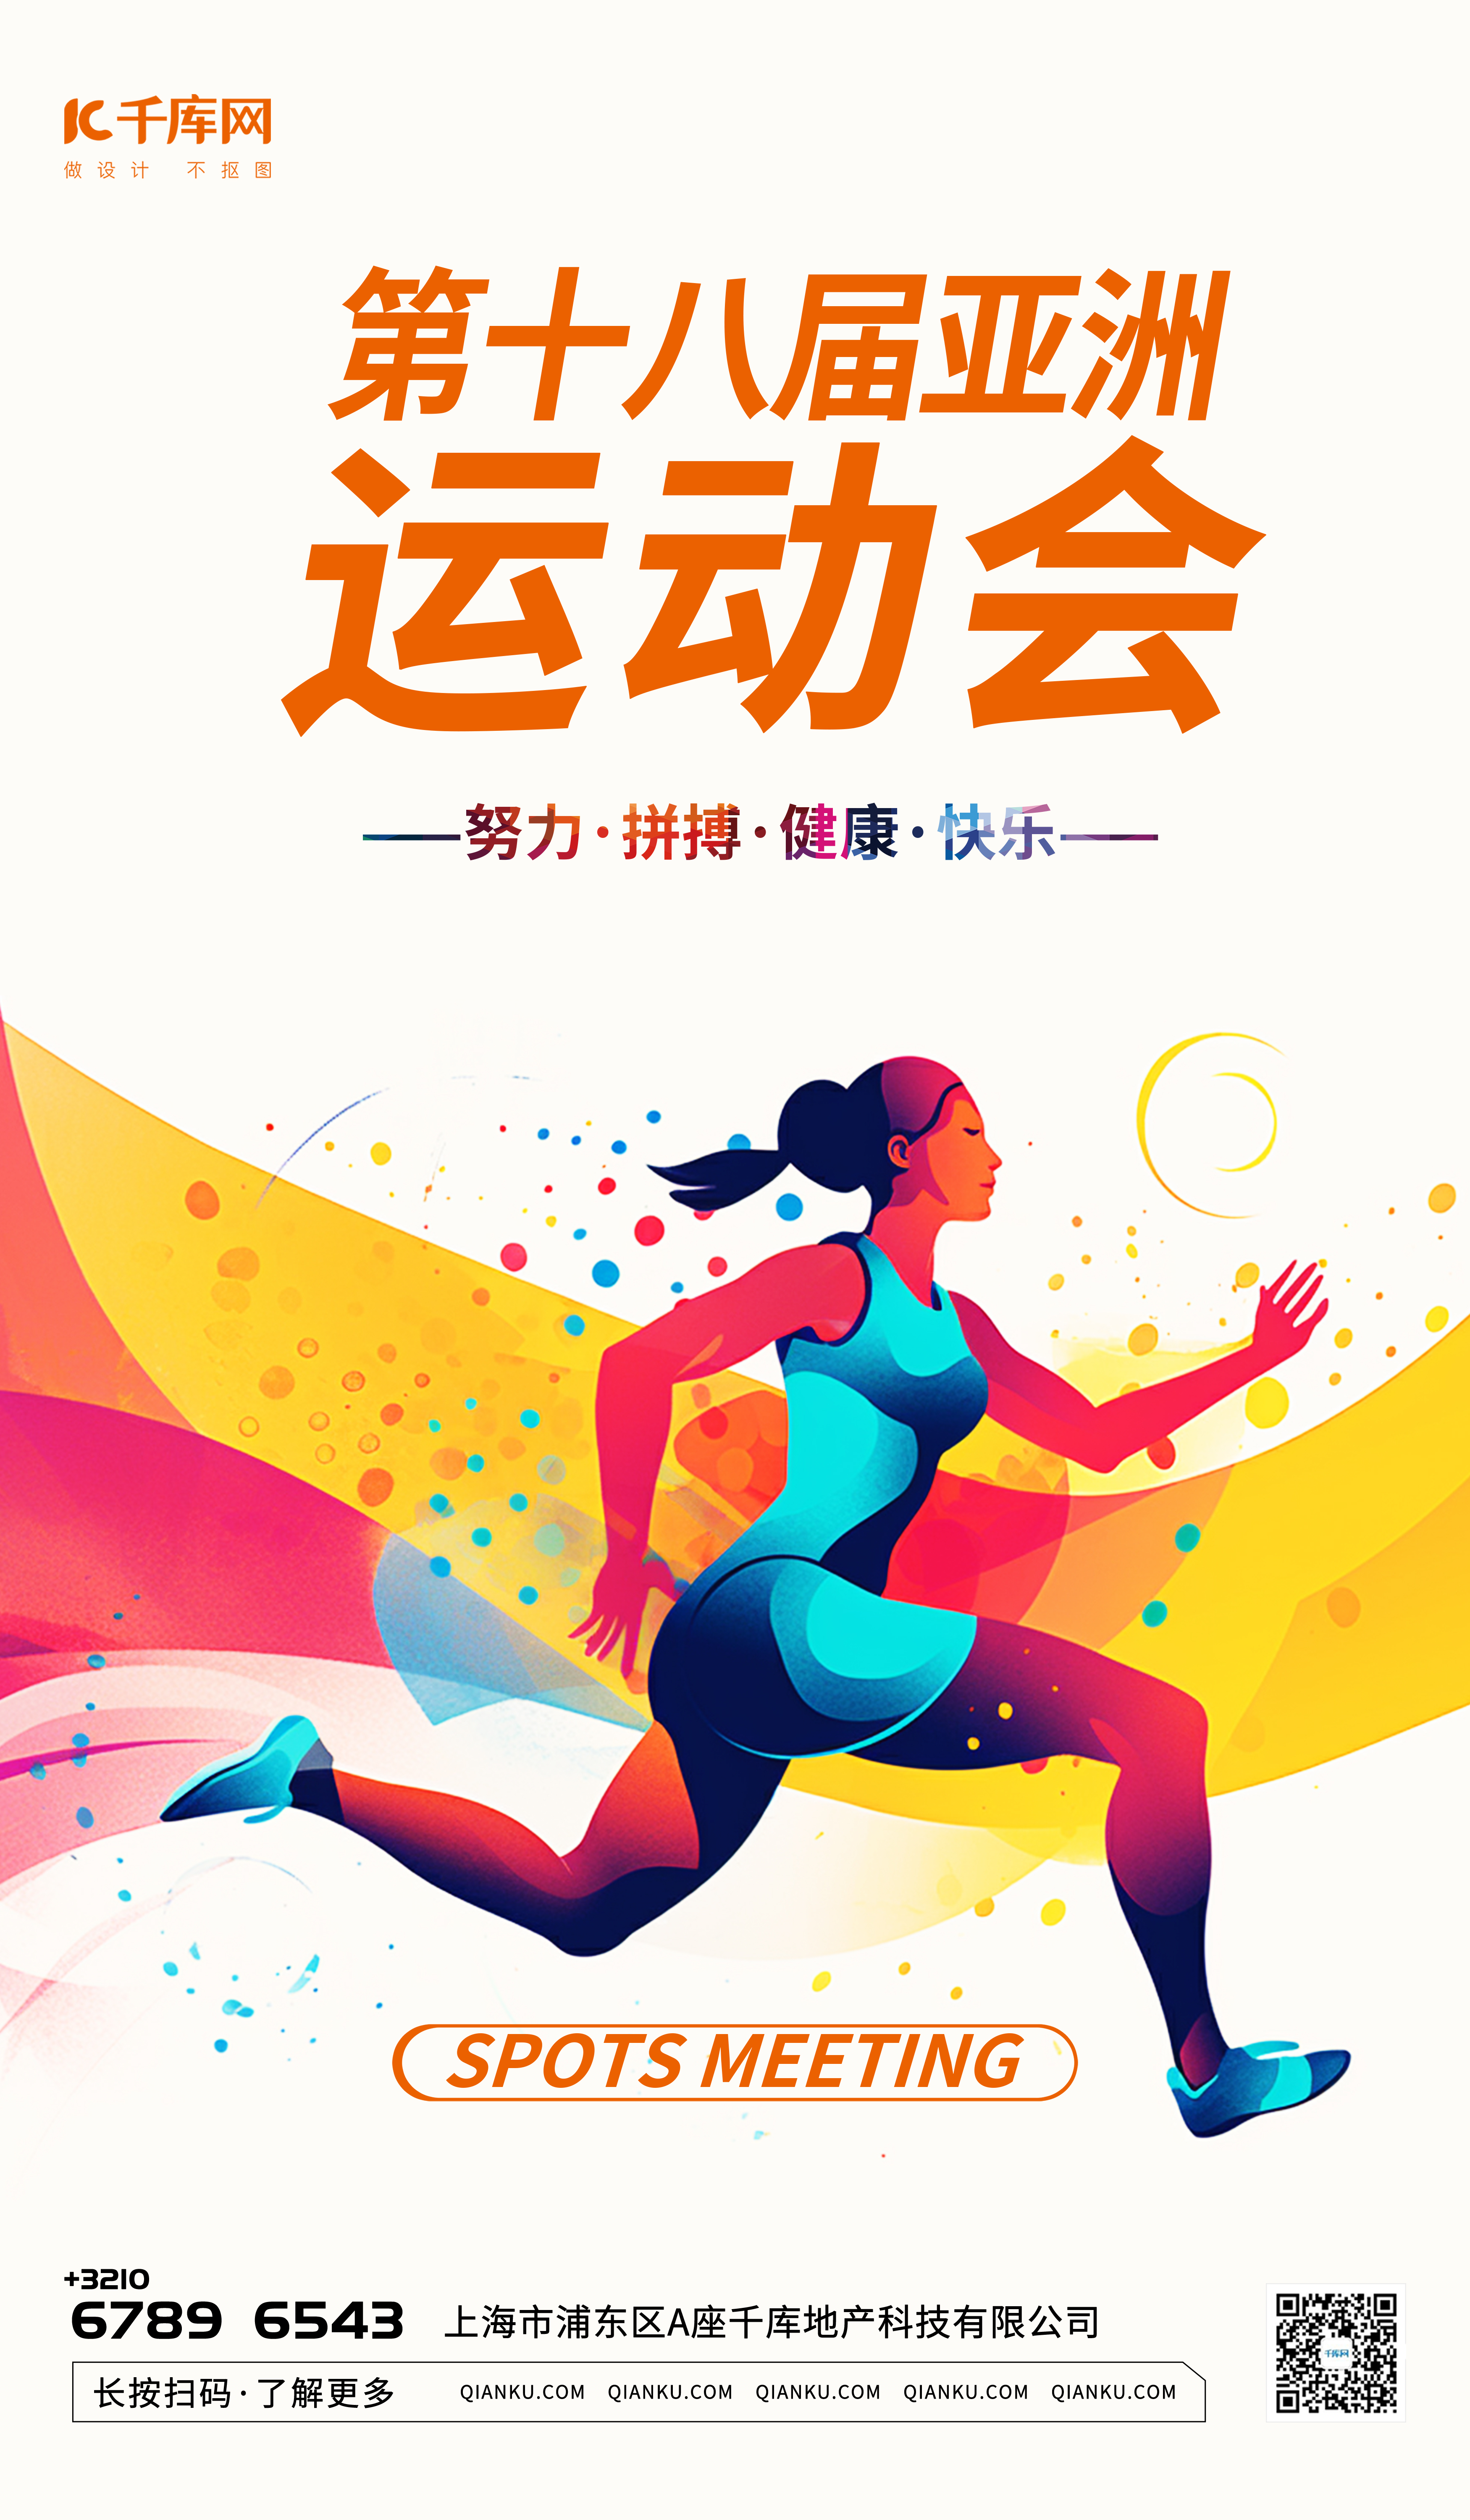 运动会杭州体育比赛暖色渐变AIGC广告宣传海报图片